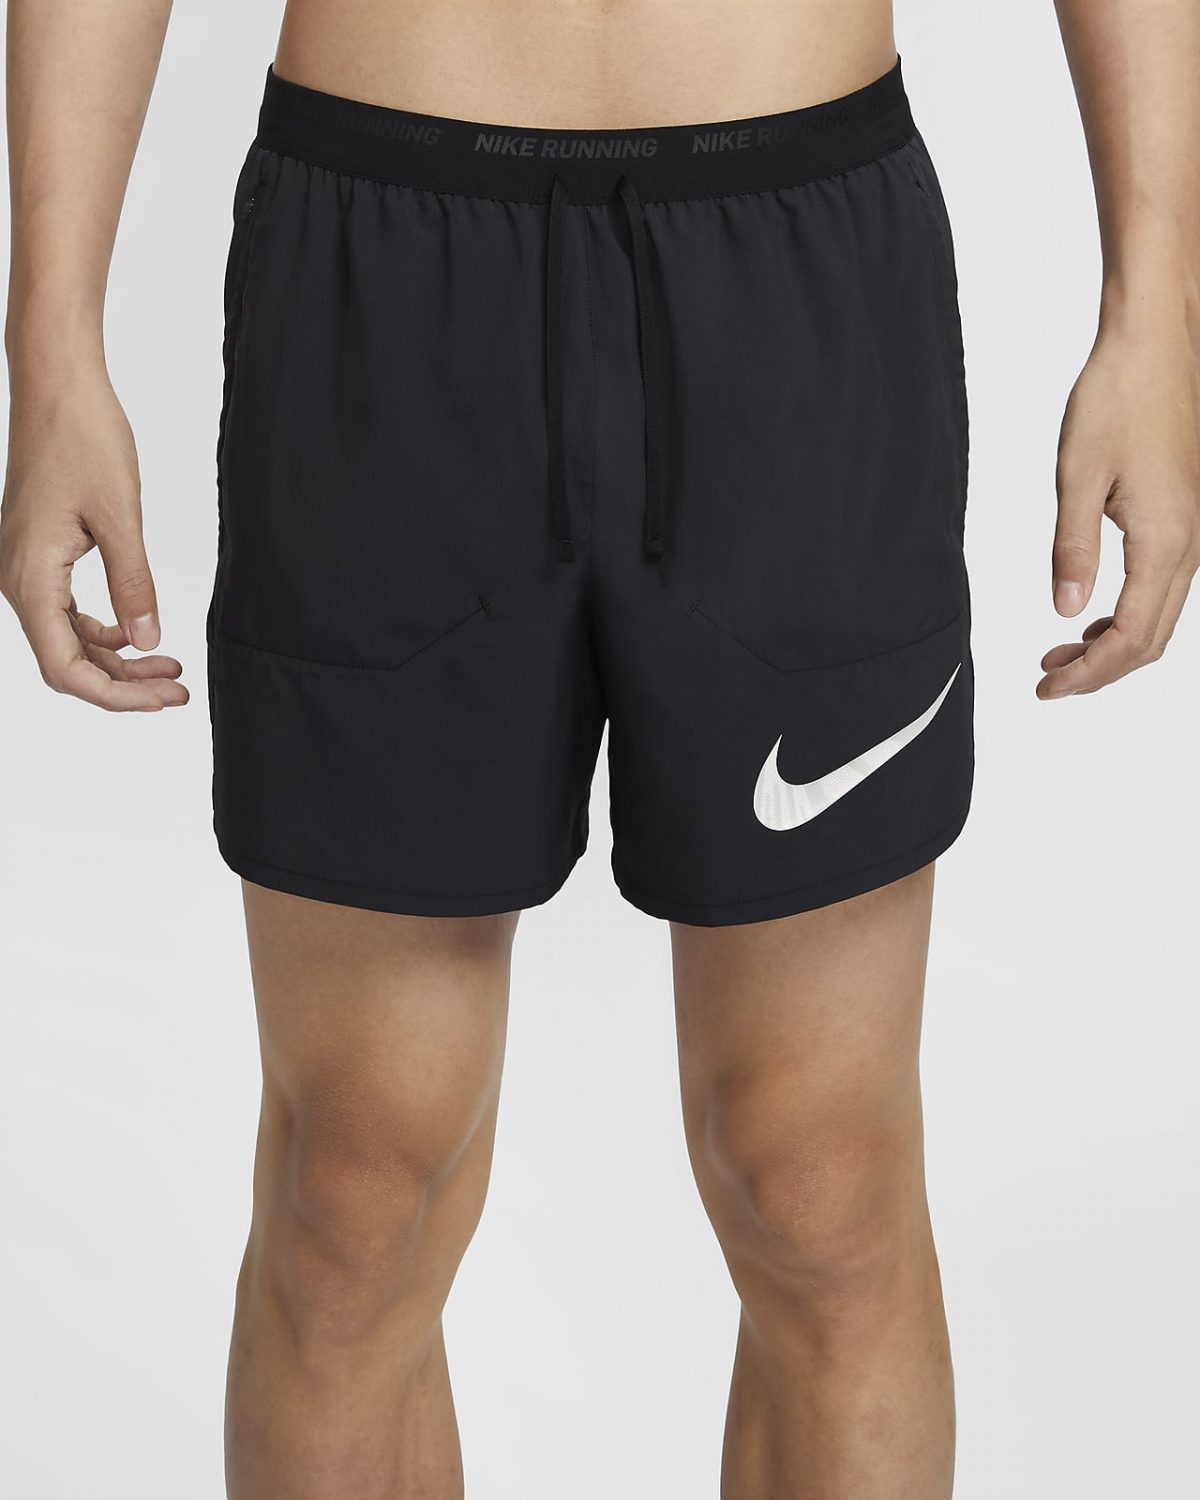 Мужские шорты Nike Stride Run Energy черные фотография